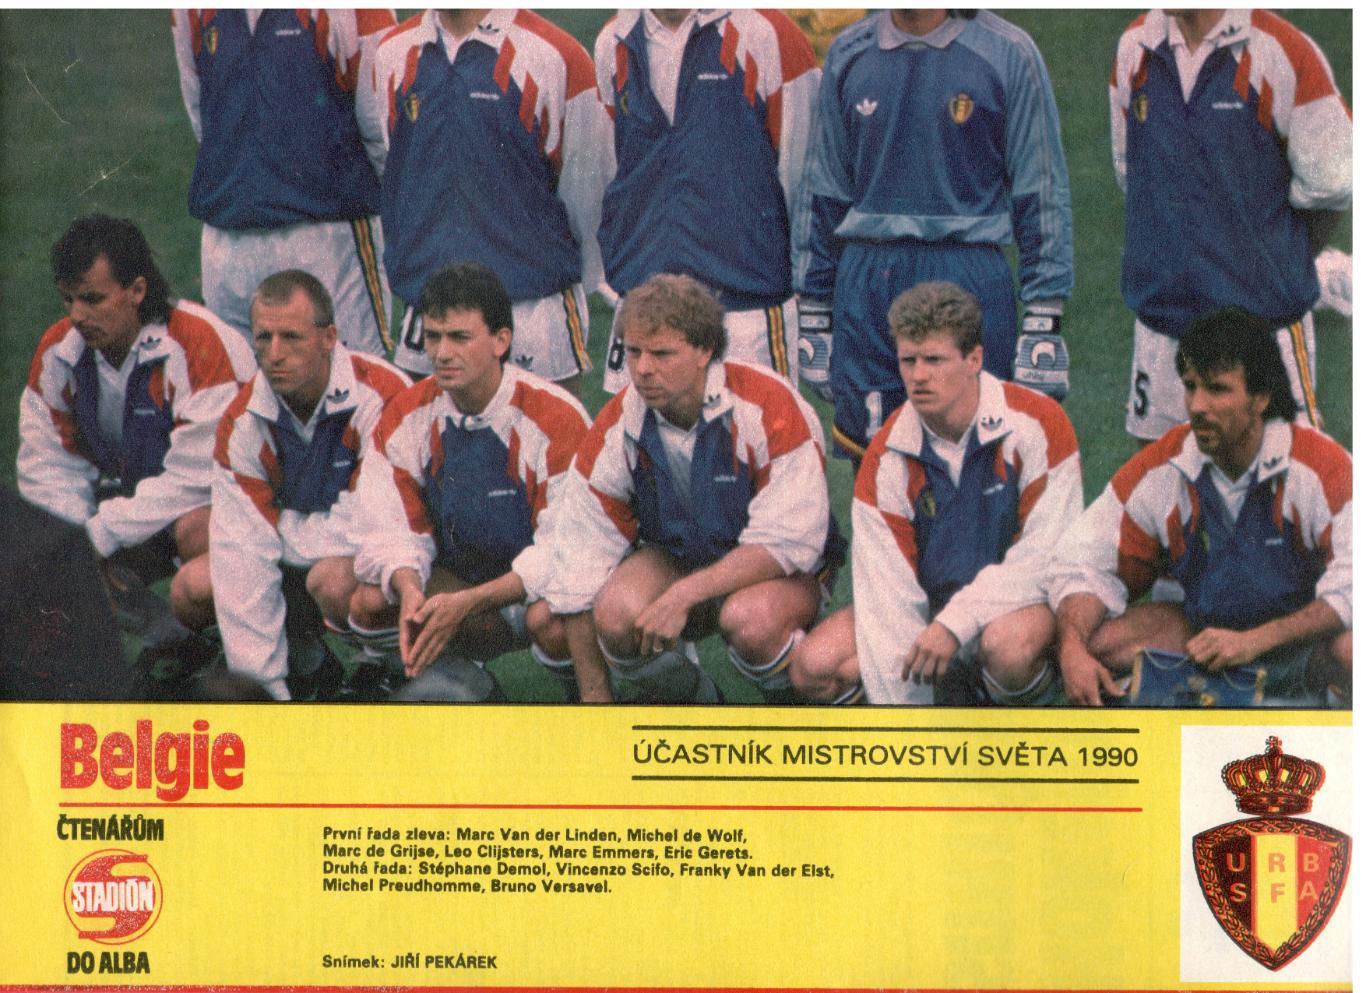 Участники чемпионата мира 1990. Бельгия